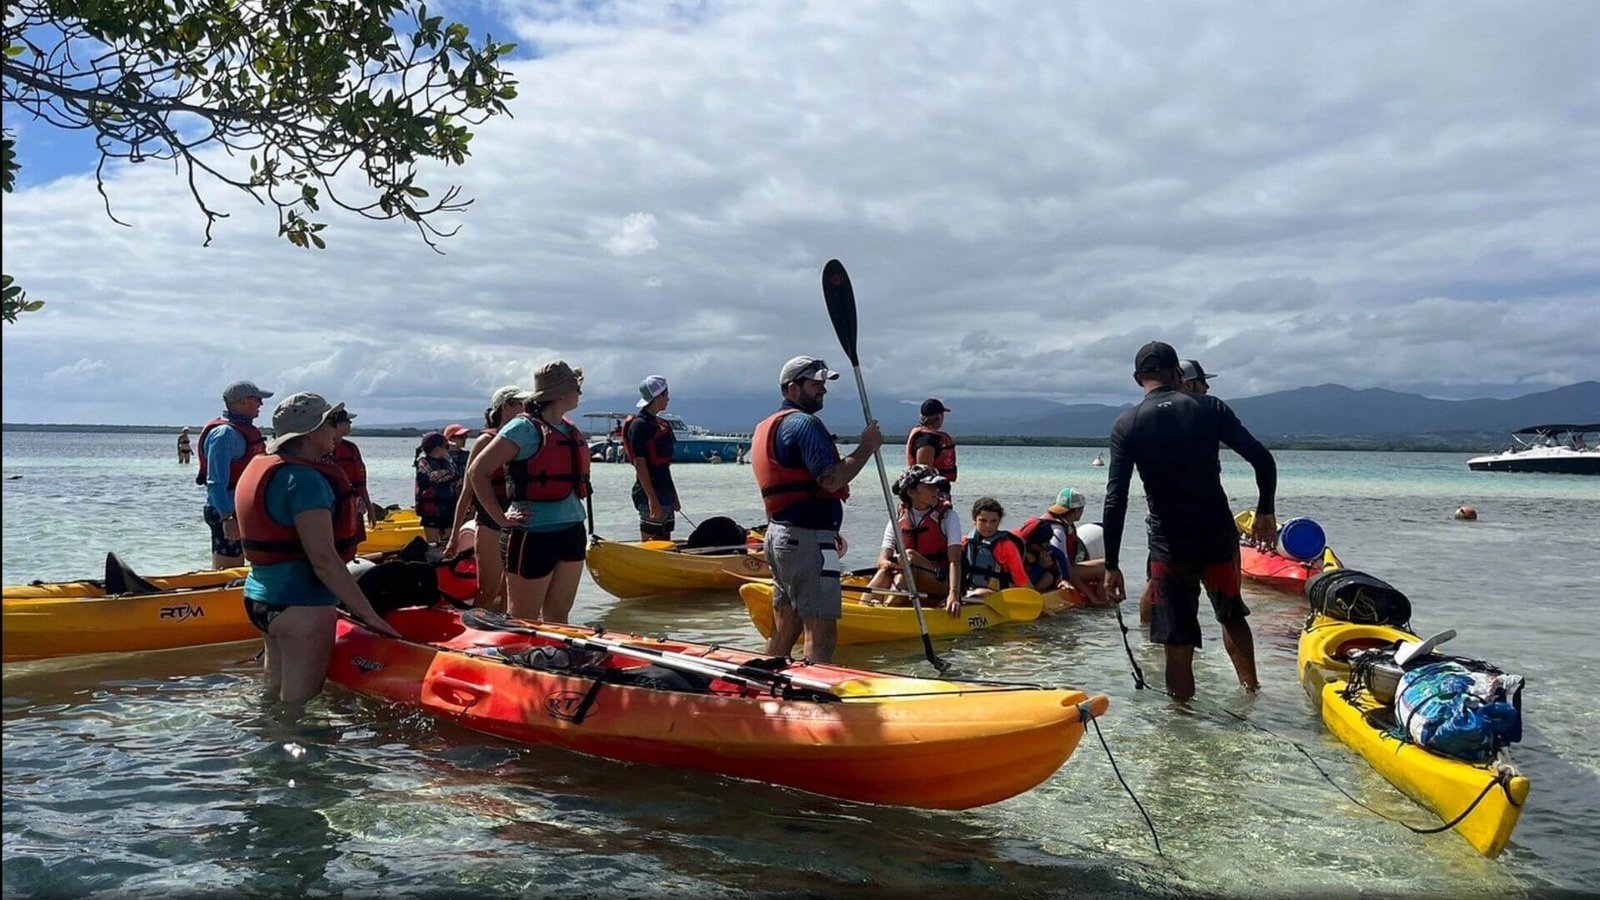 Un groupe de kayakistes en équipement de sécurité se prépare pour une excursion en mer en Guadeloupe. Ils sont à mi-chemin dans l'eau claire, à côté de leurs kayaks jaunes et rouges, écoutant un guide qui tient une pagaie. Le ciel est partiellement nuageux, et on peut voir des montagnes et un bateau de croisière en arrière-plan, offrant un contraste saisissant avec le paysage côtier tranquille.